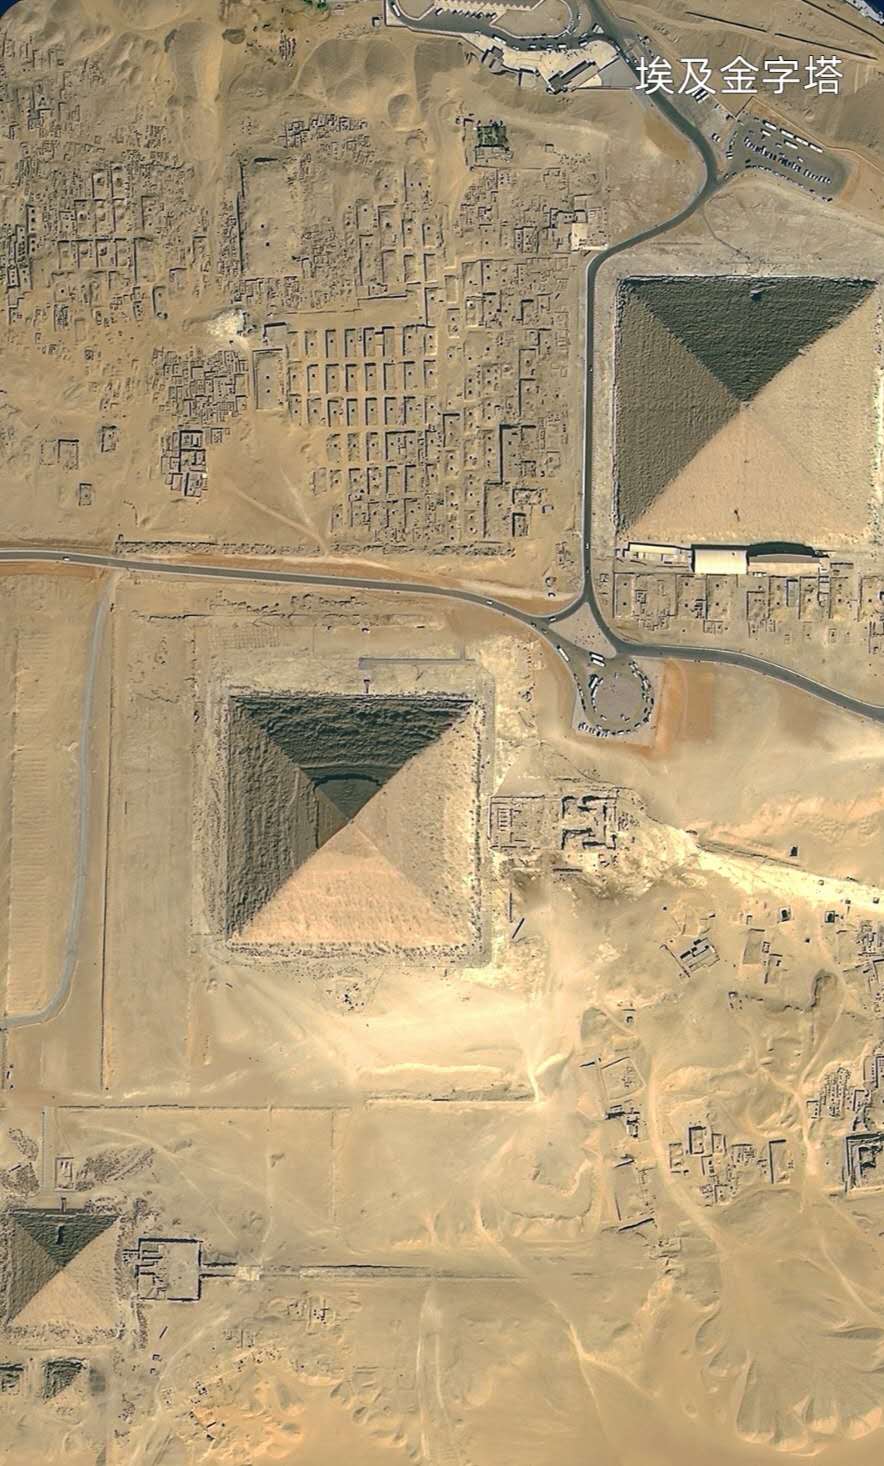 高景一号埃及金字塔